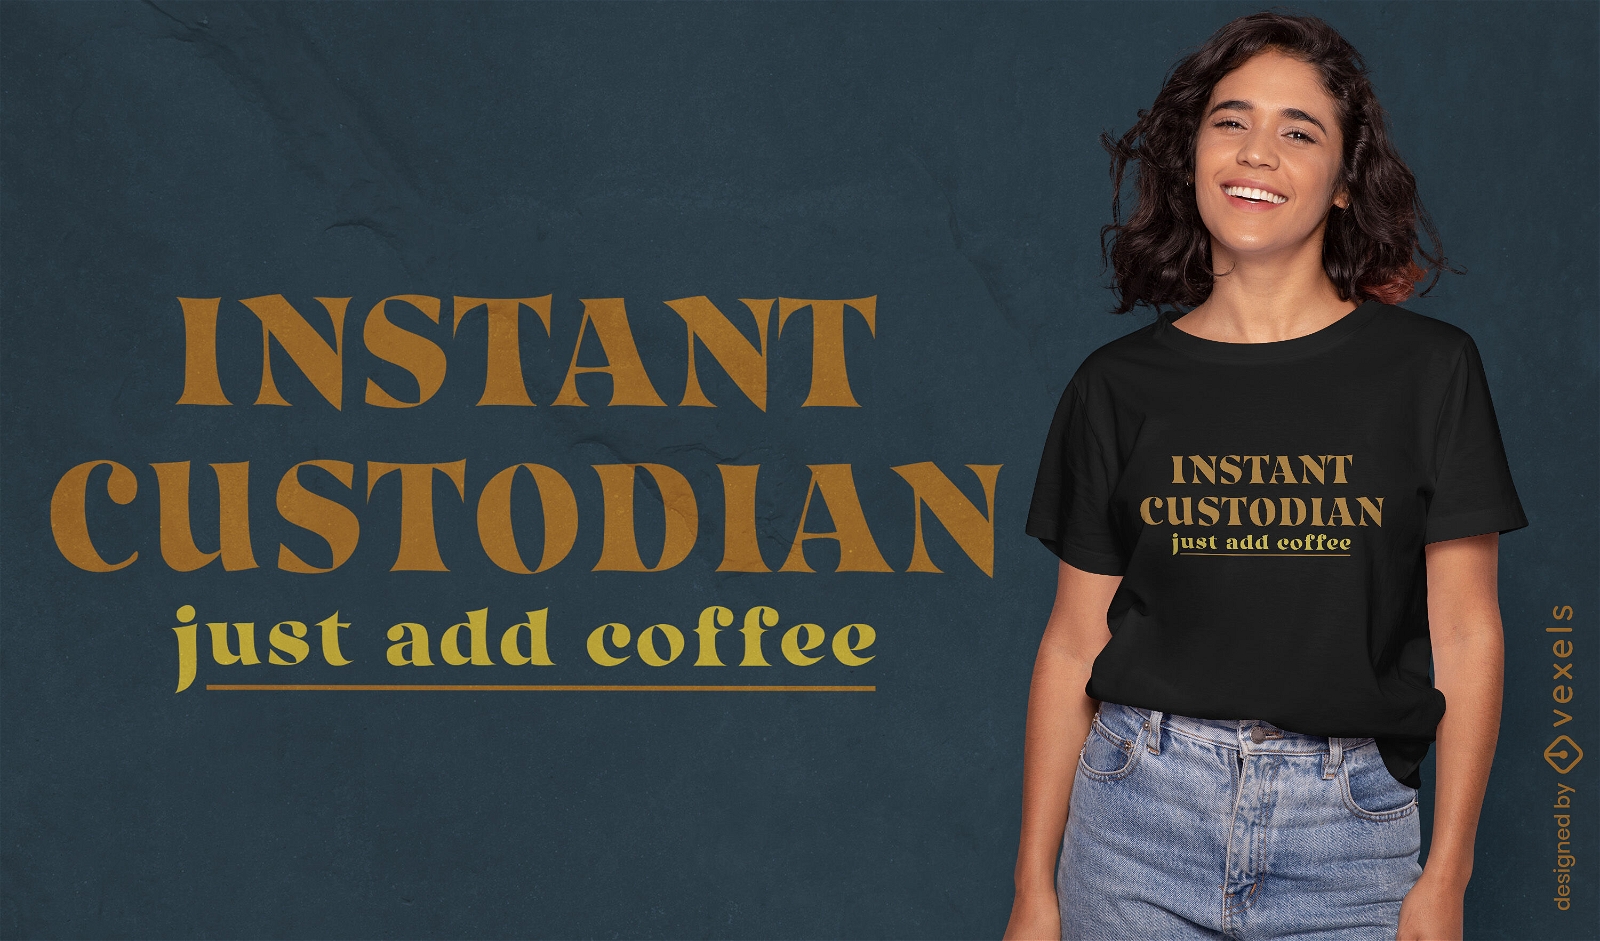 Design instant?neo de camiseta com humor para cust?dia